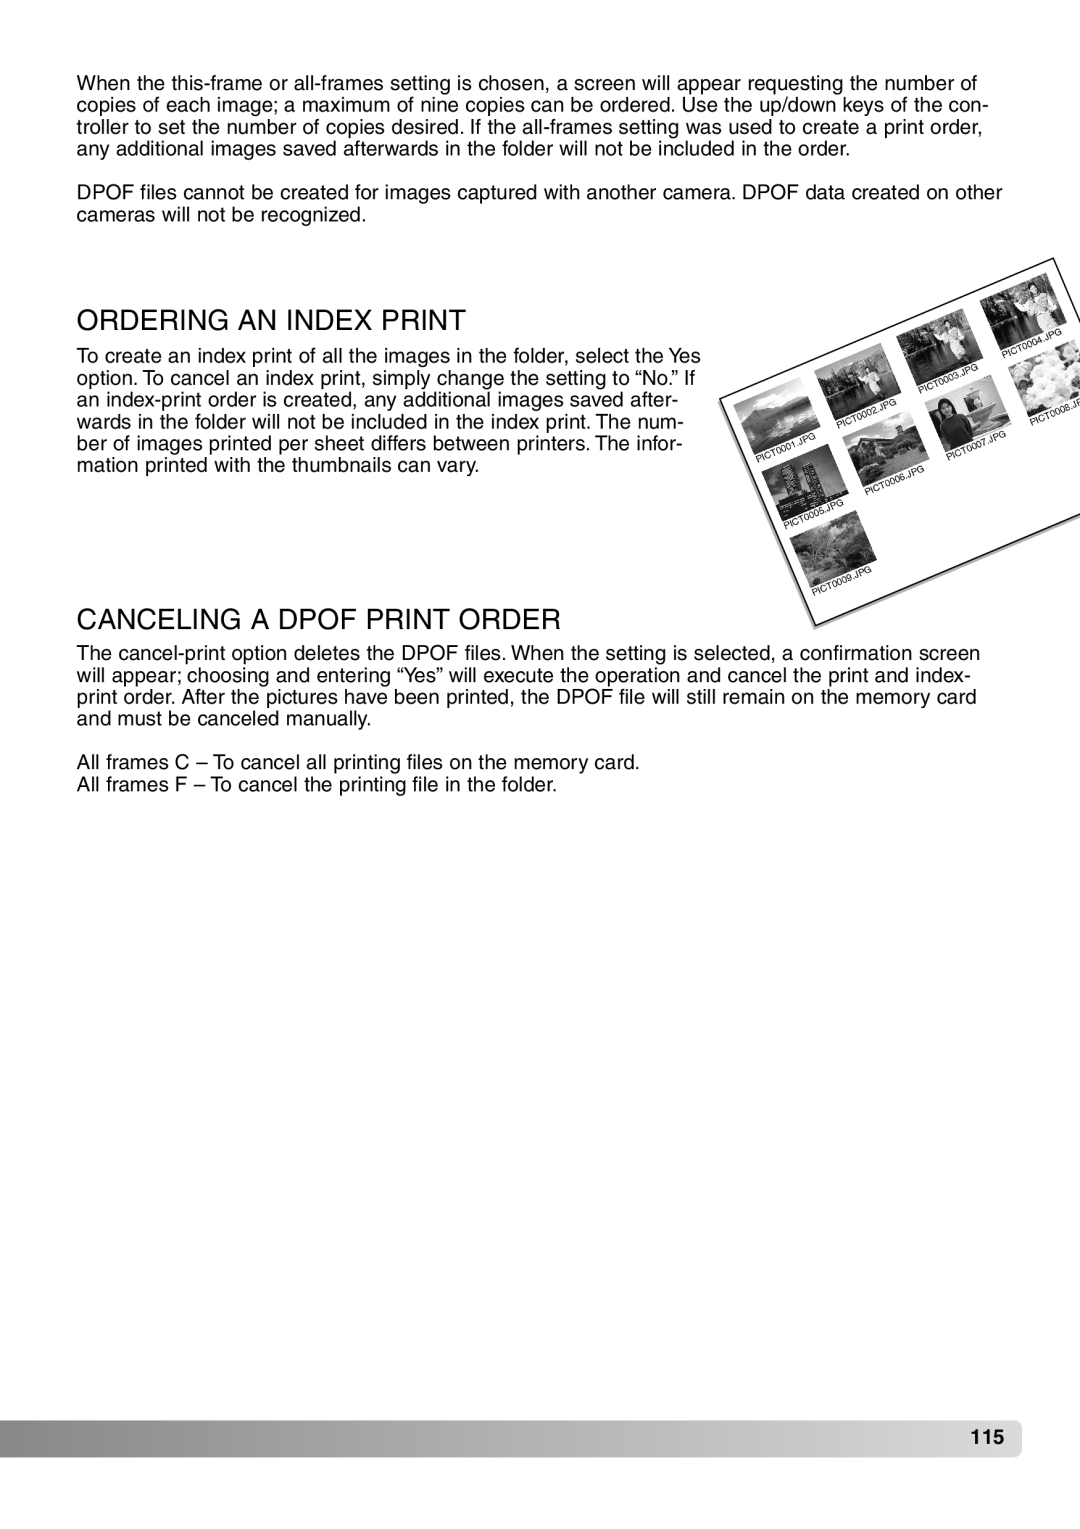 Konica Minolta 7Hi instruction manual Ordering AN Index Print, Canceling a Dpof Print Order 